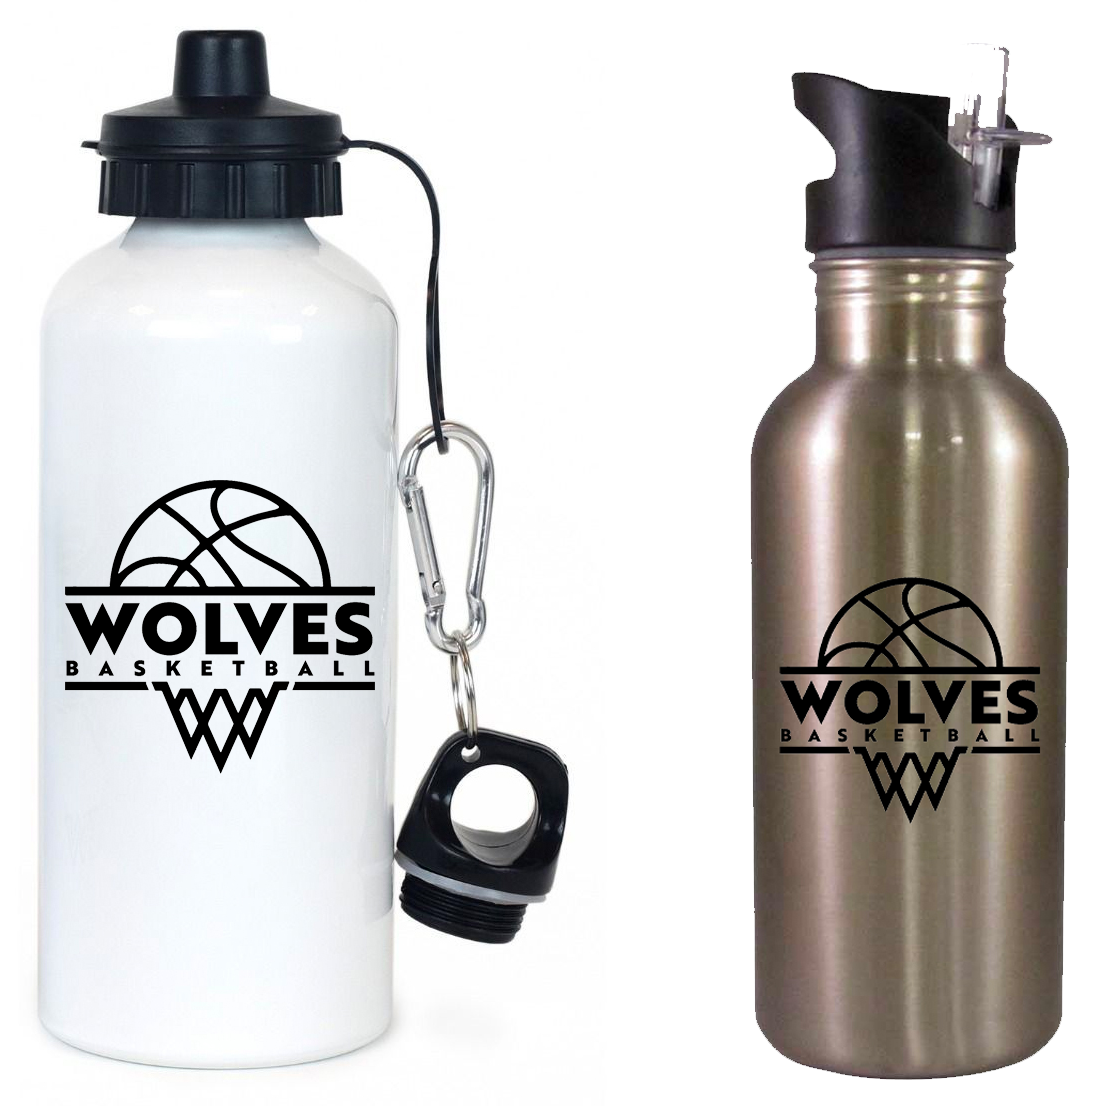 Wolves Basketball Team Water Bottle